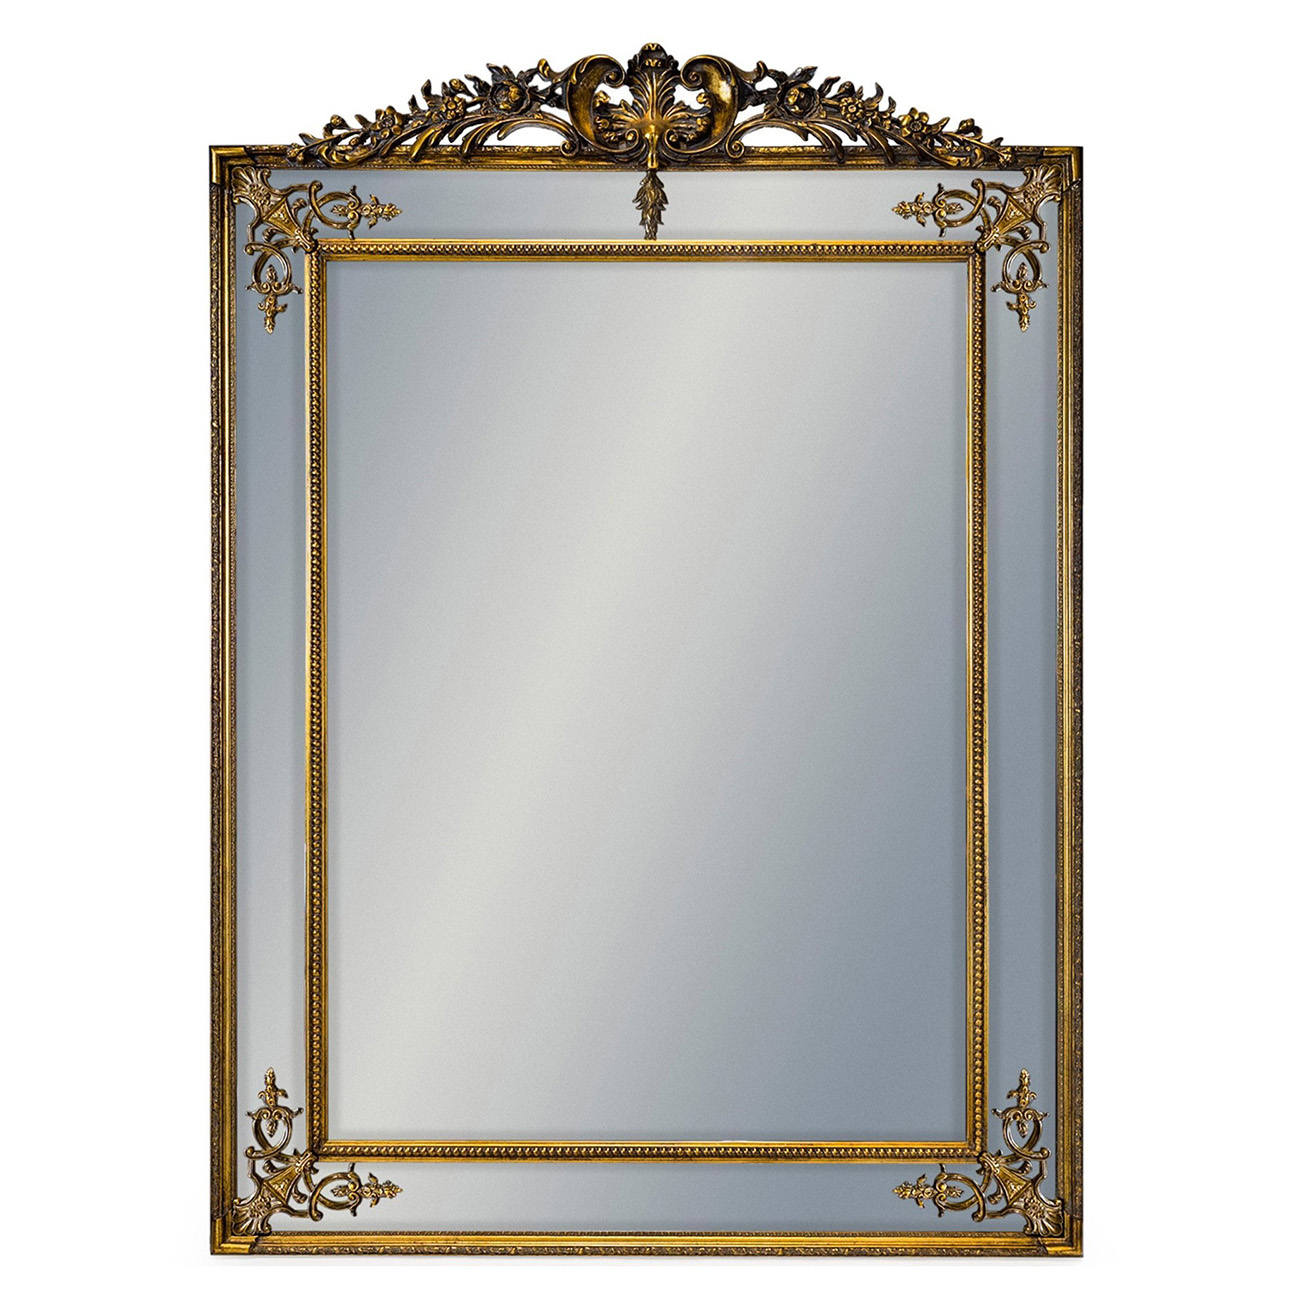 Напольное зеркало Louvrehome "Дилан" Antique Gold/28, размер 136х200х7 (LH144HDG)LH144HDG